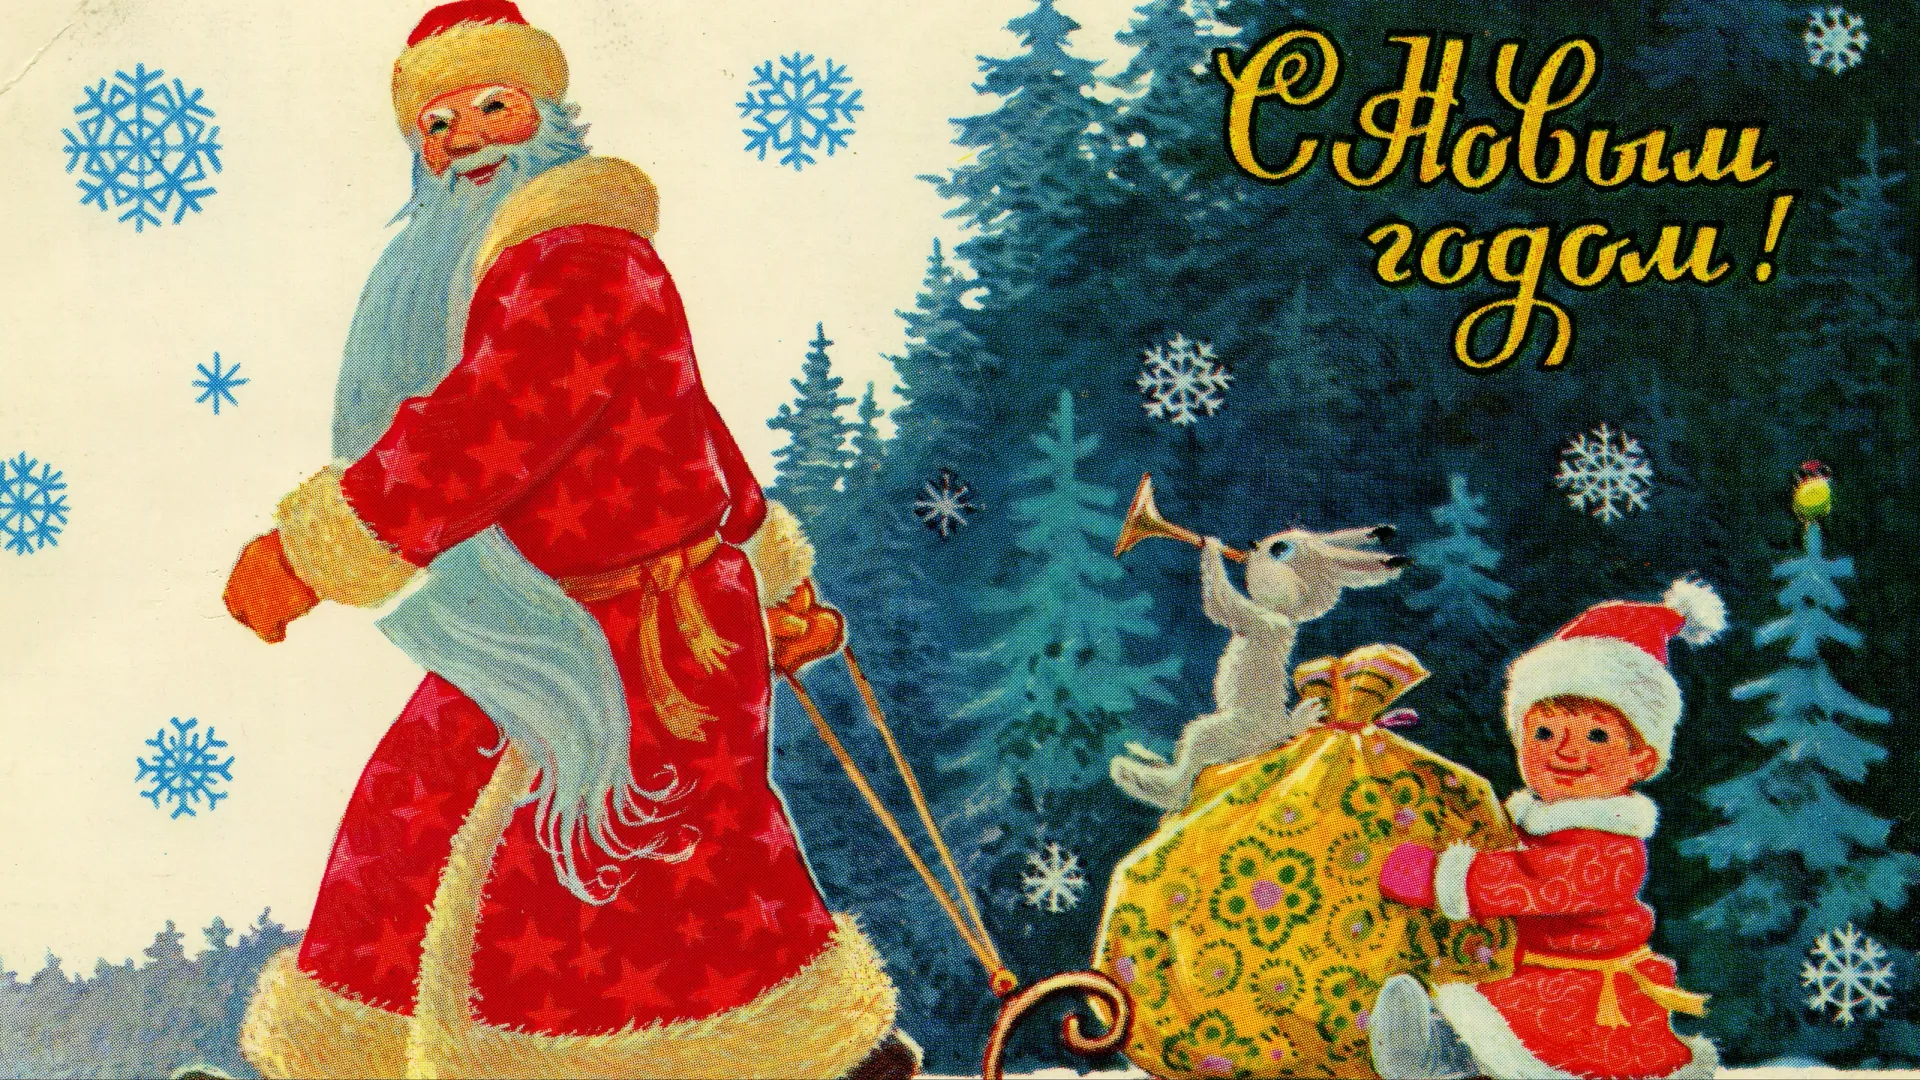 Советская новогодняя открытка. Фото: IgorGolovniov / Shutterstock / Fotodom